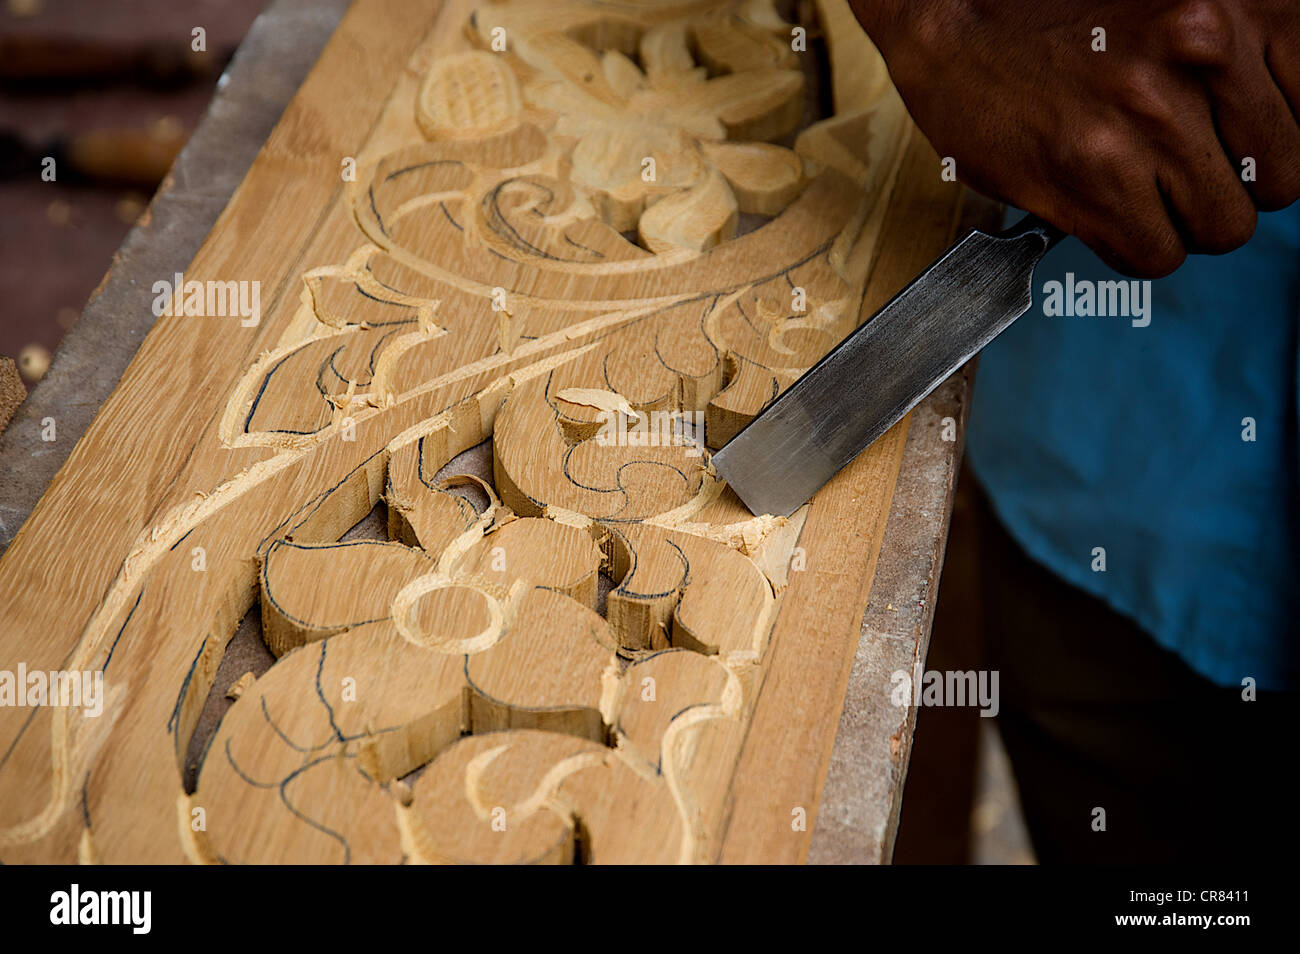 Wood art détaillées, avec de beaux éléments graphiques. Mombasa, Kenya, Afrique de l'Est. Banque D'Images